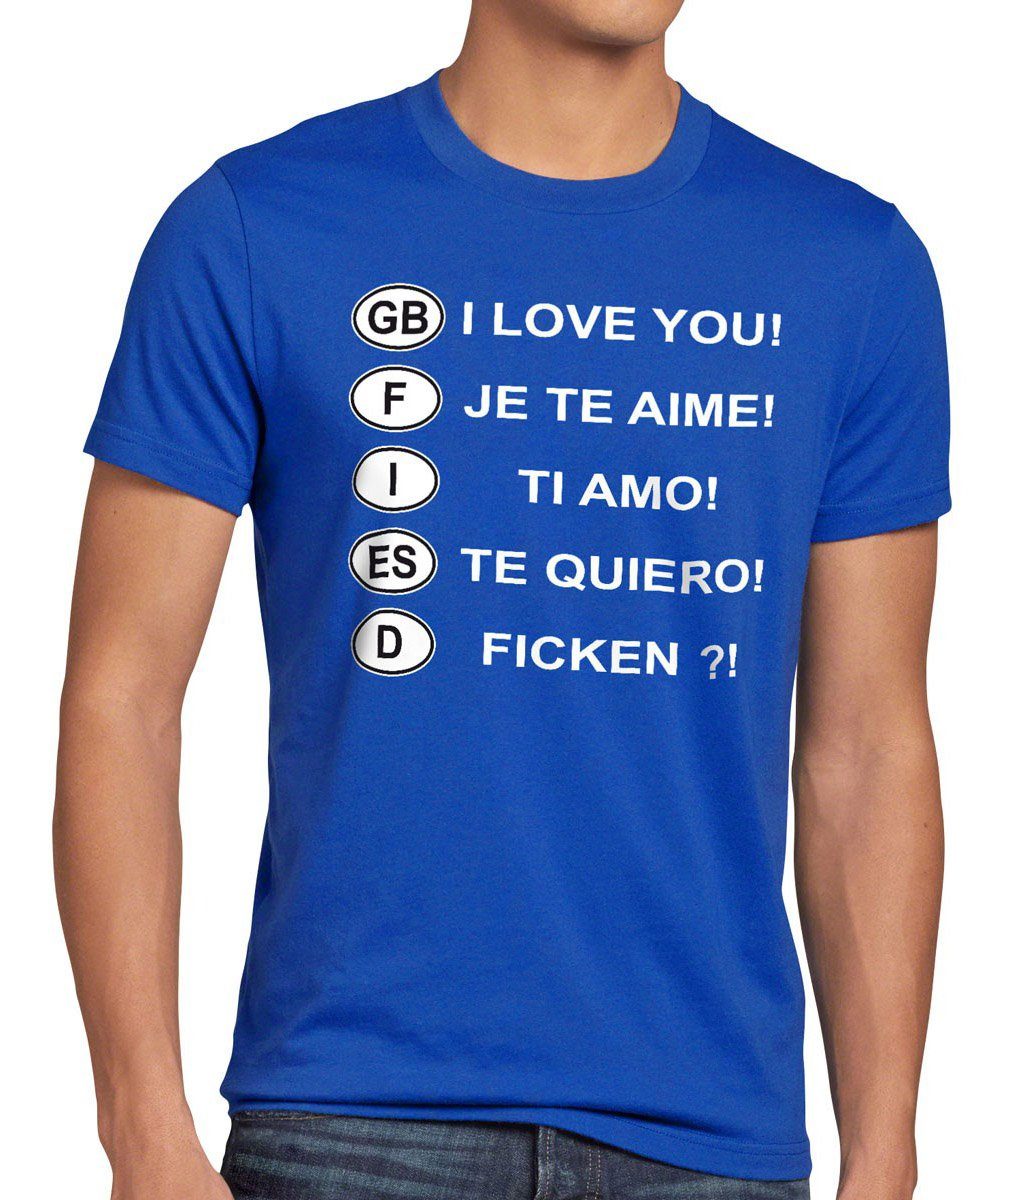 style3 Print-Shirt Herren T-Shirt Fun Auto Kennzeichen Urlaub Ficken Spruch Funshirt spass Mallorca blau